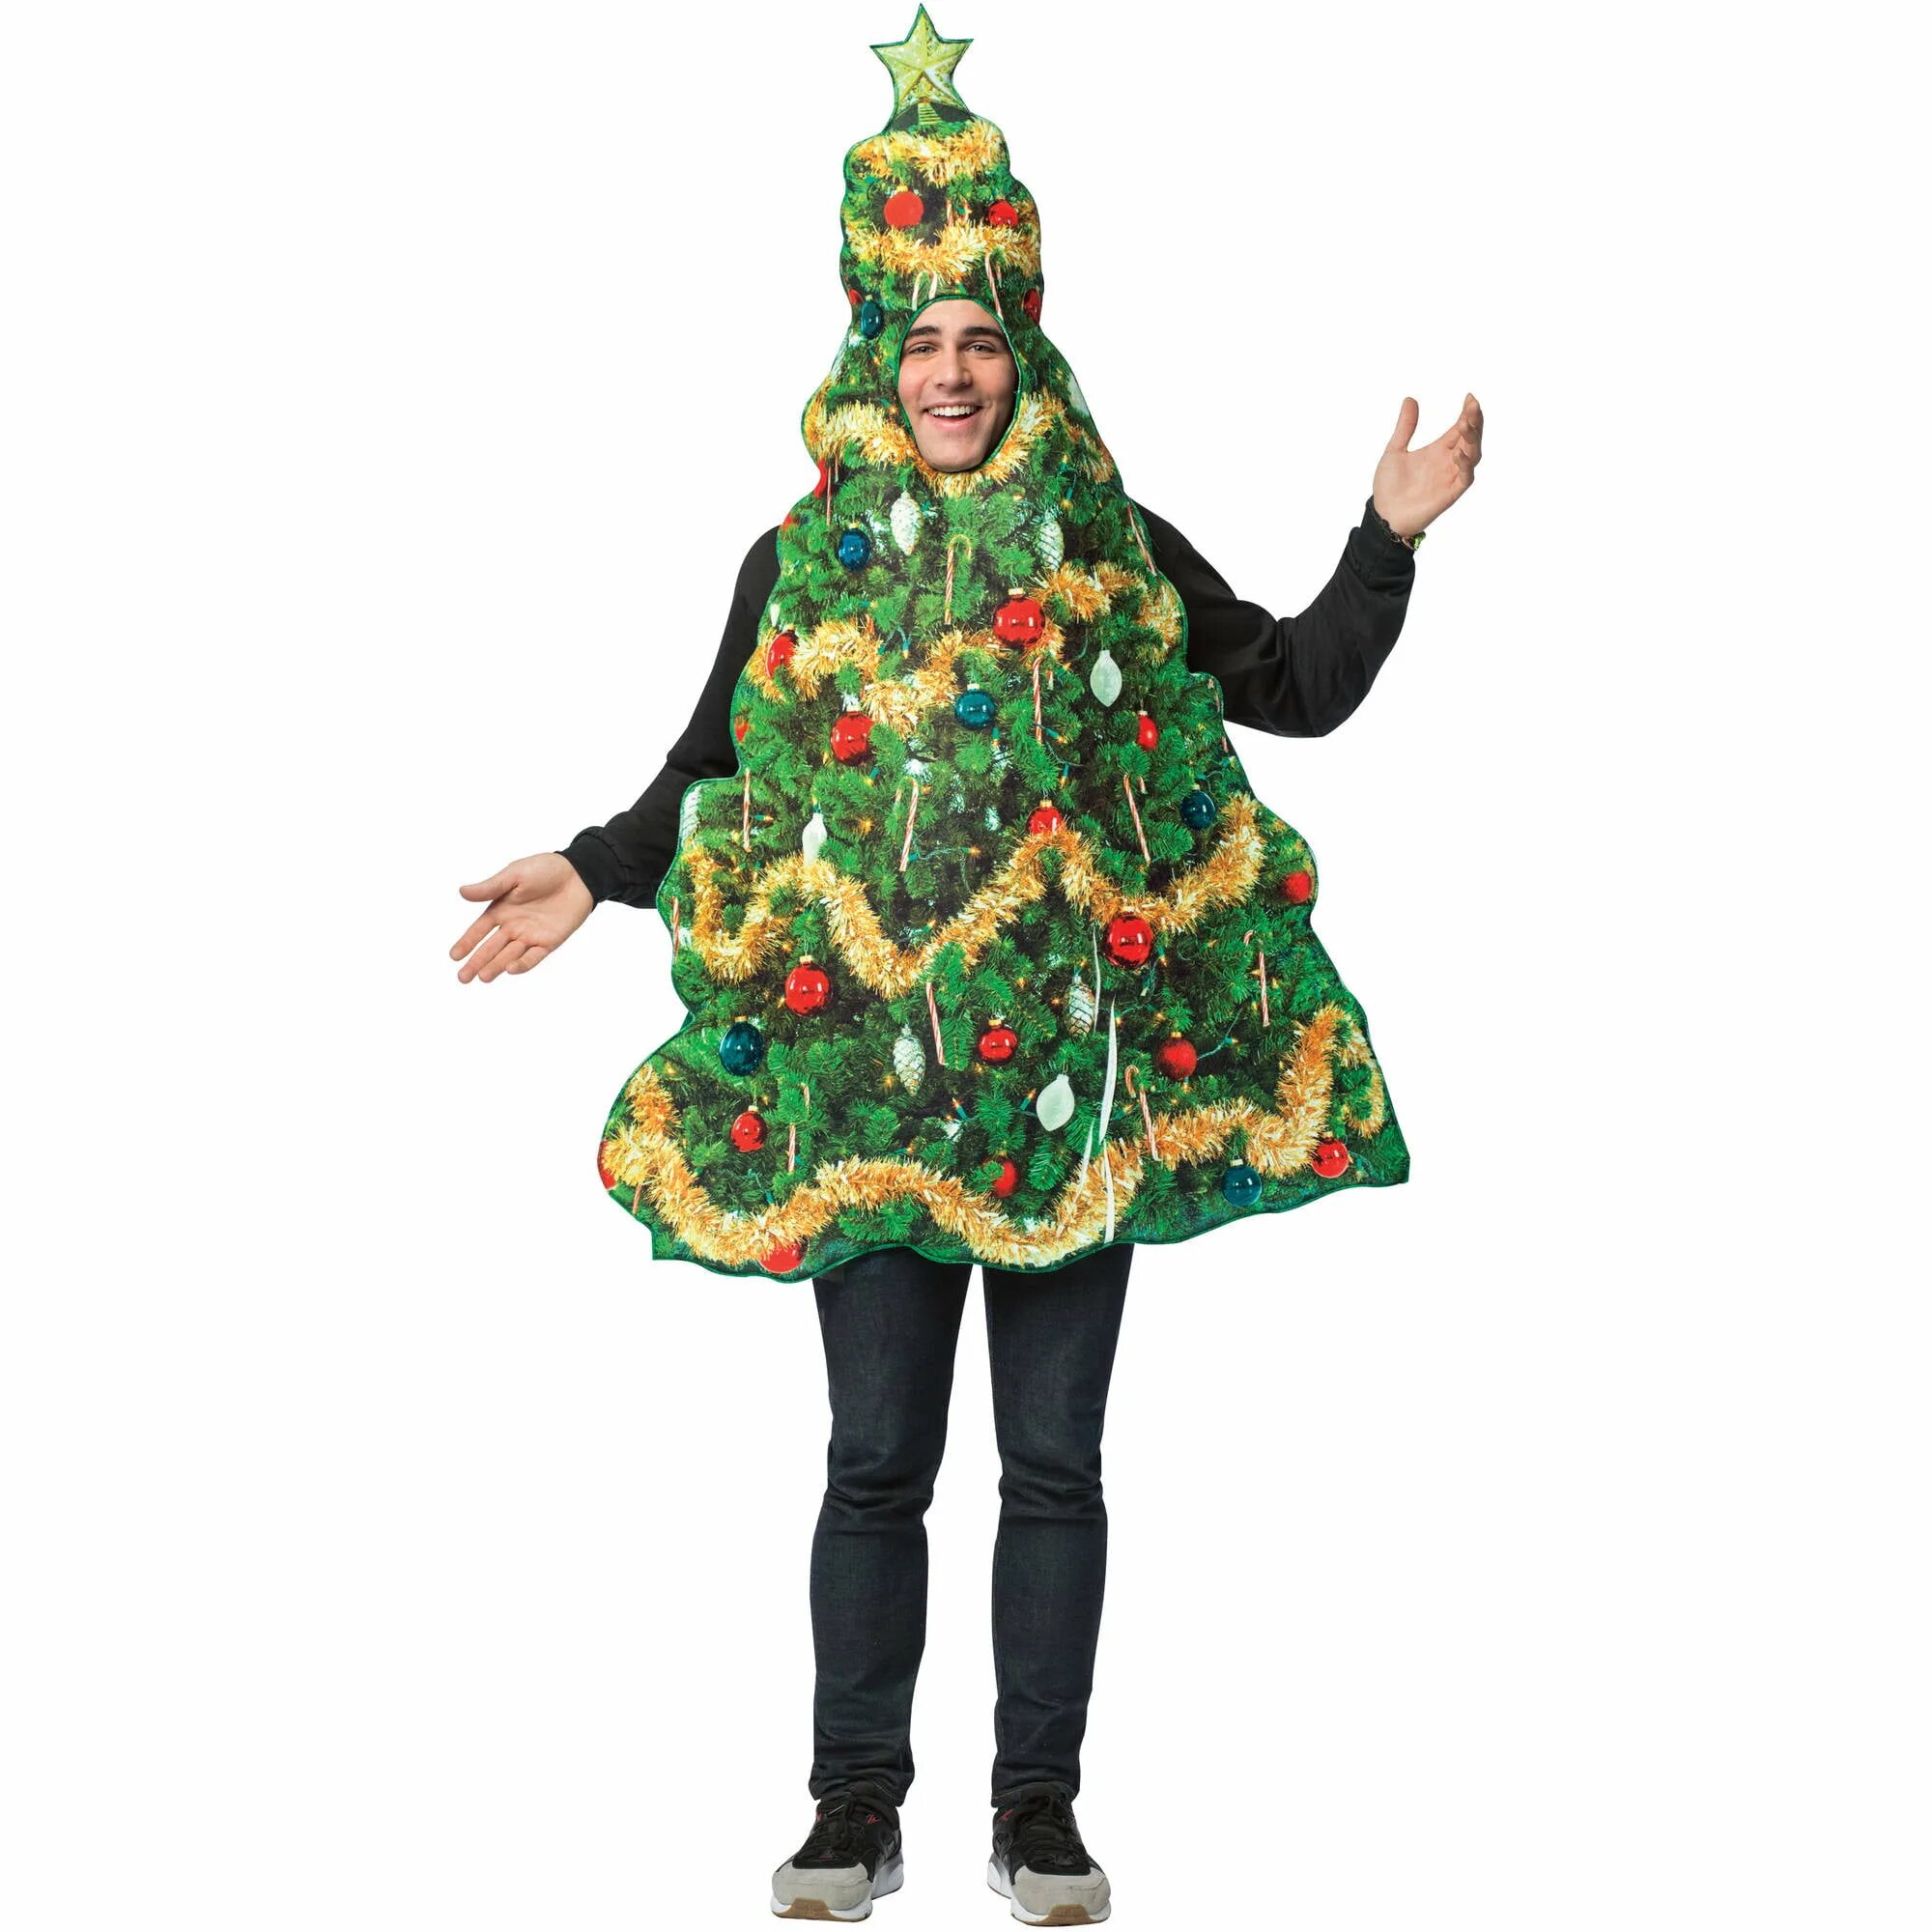 Есть новогодние костюмы. Костюм елки, взрослый. Новогодние маскарадные костюмы. Новогодний костюм елки взрослый. Новогодний костюм для мальчика елка.